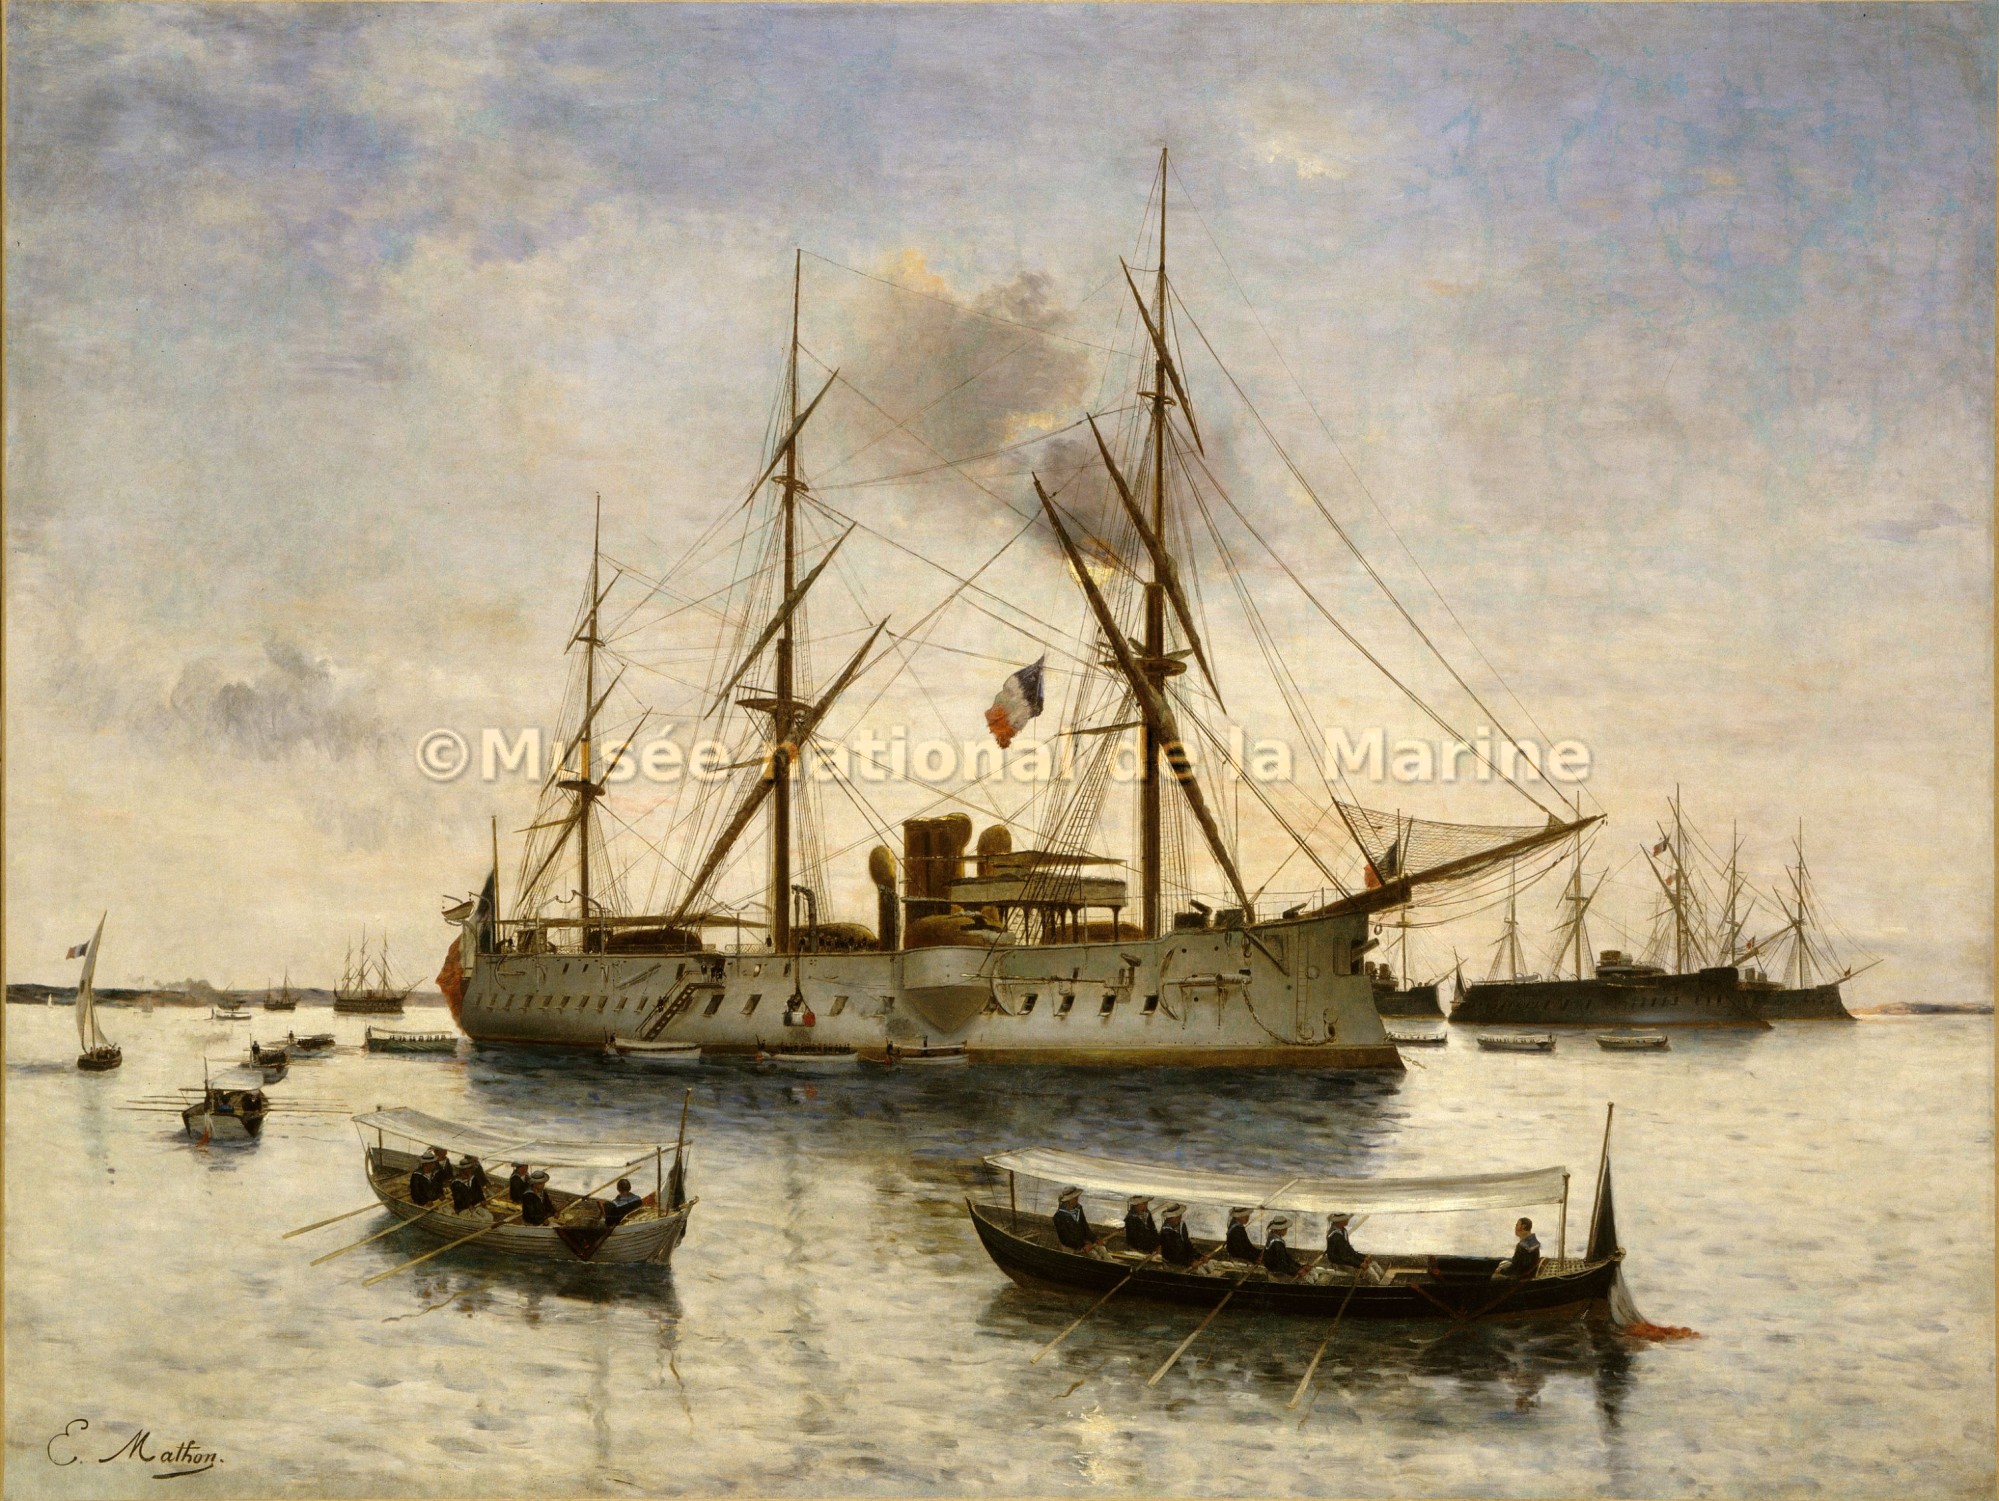 Retour des cendres de l'Amiral Courbet aux Salins d'Hyères en 1885 sur le Bayard